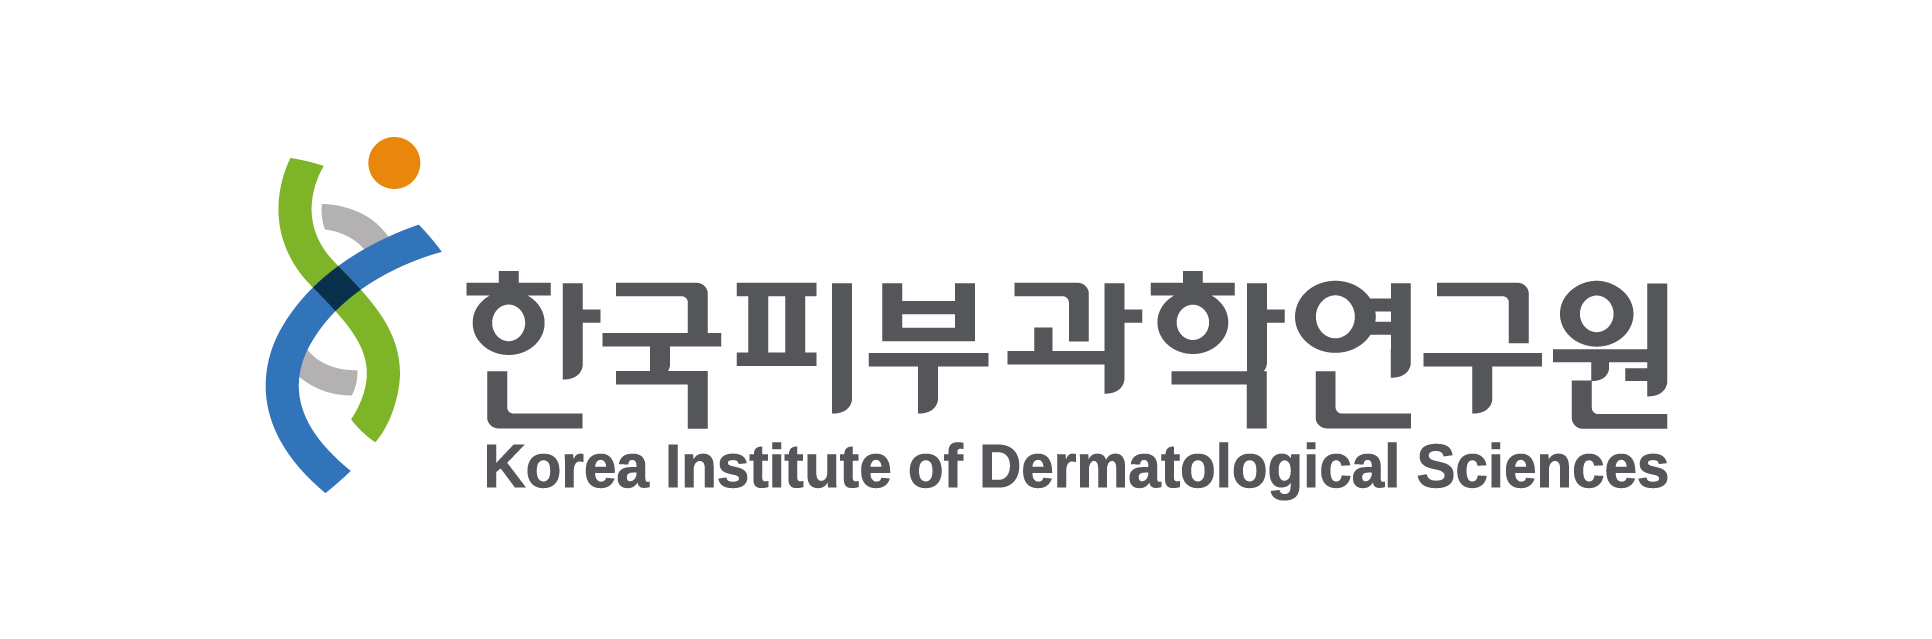 한국피부과학연구원(주)의 기업로고